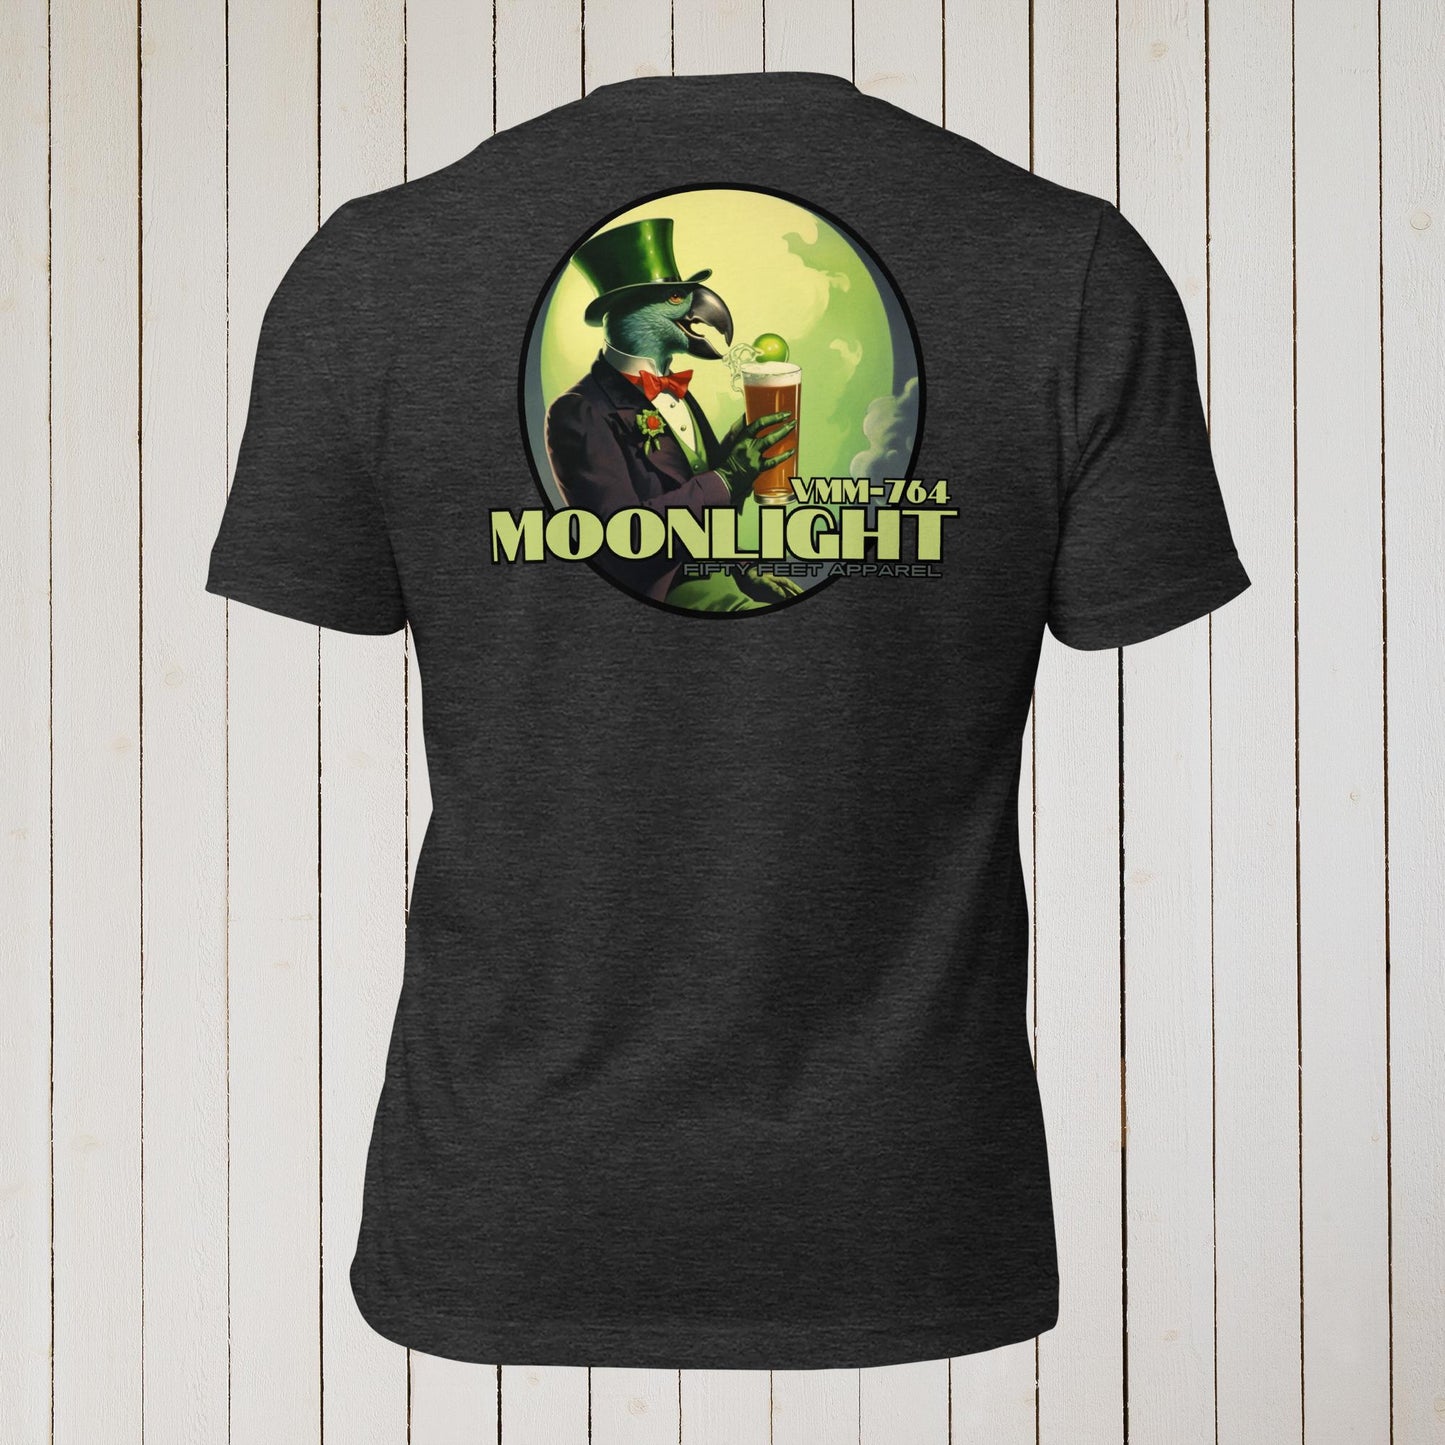 Moonlight Night Cap Edition VMM-764